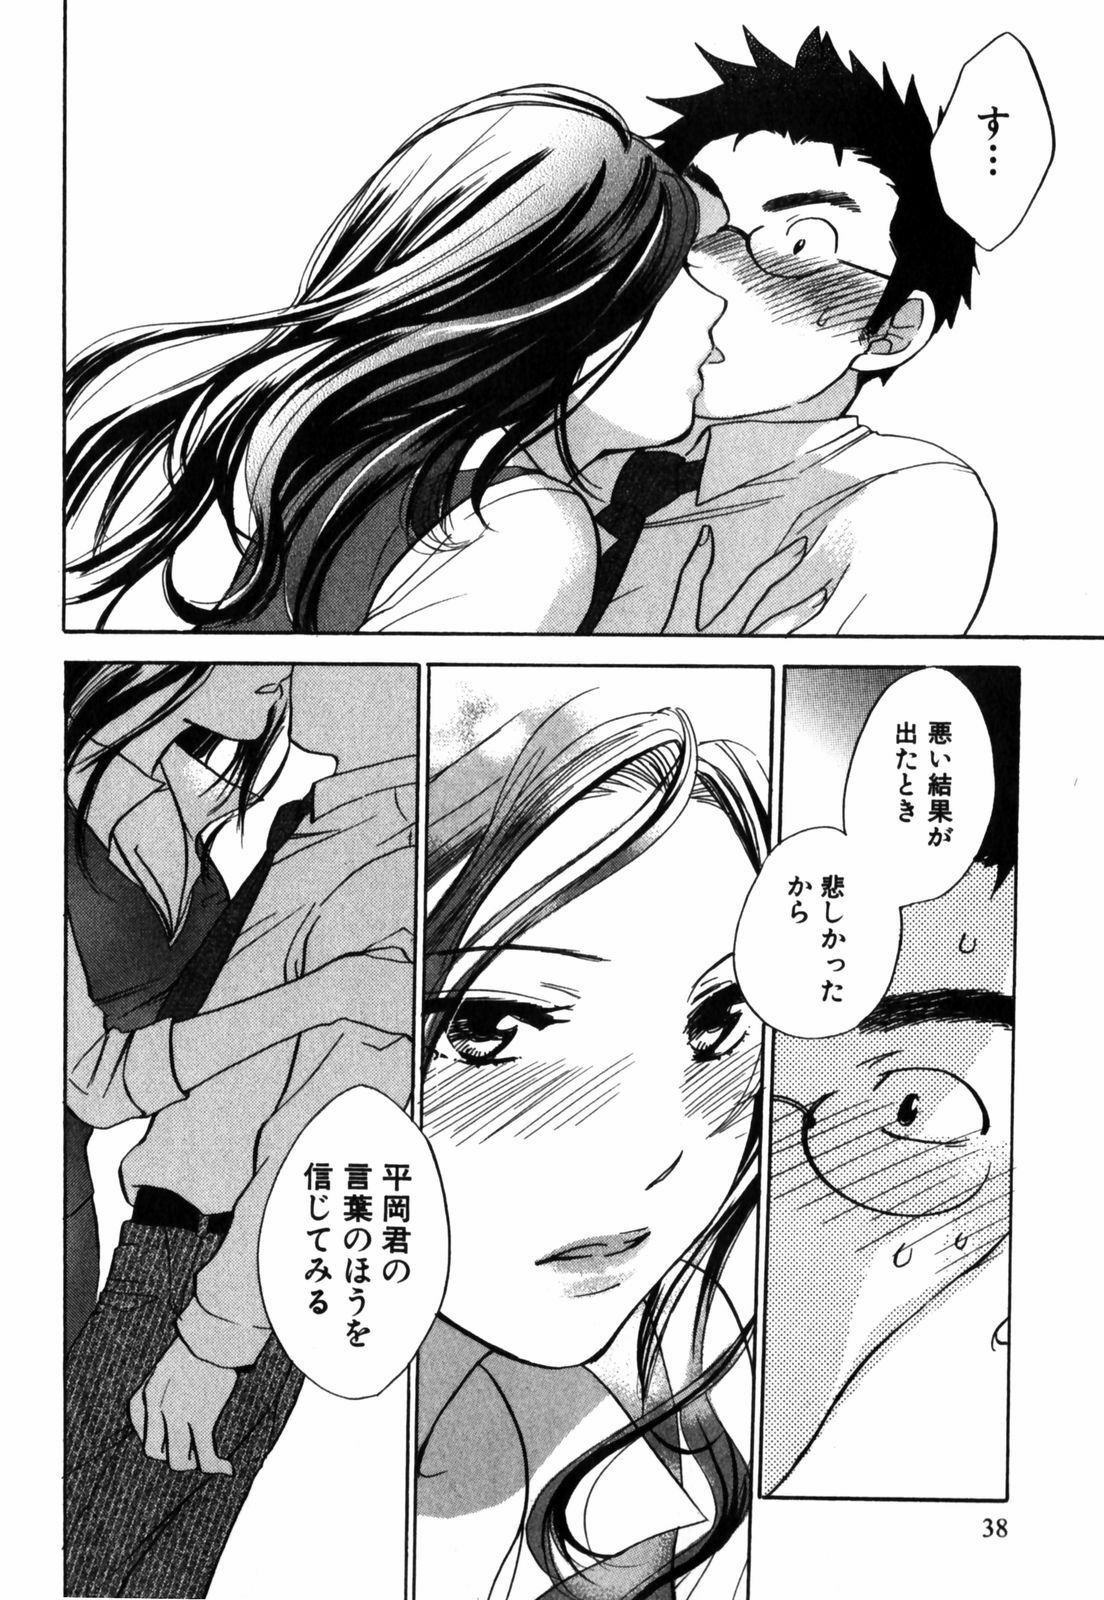 [Harumi Chihiro] Cutie Lips page 39 full